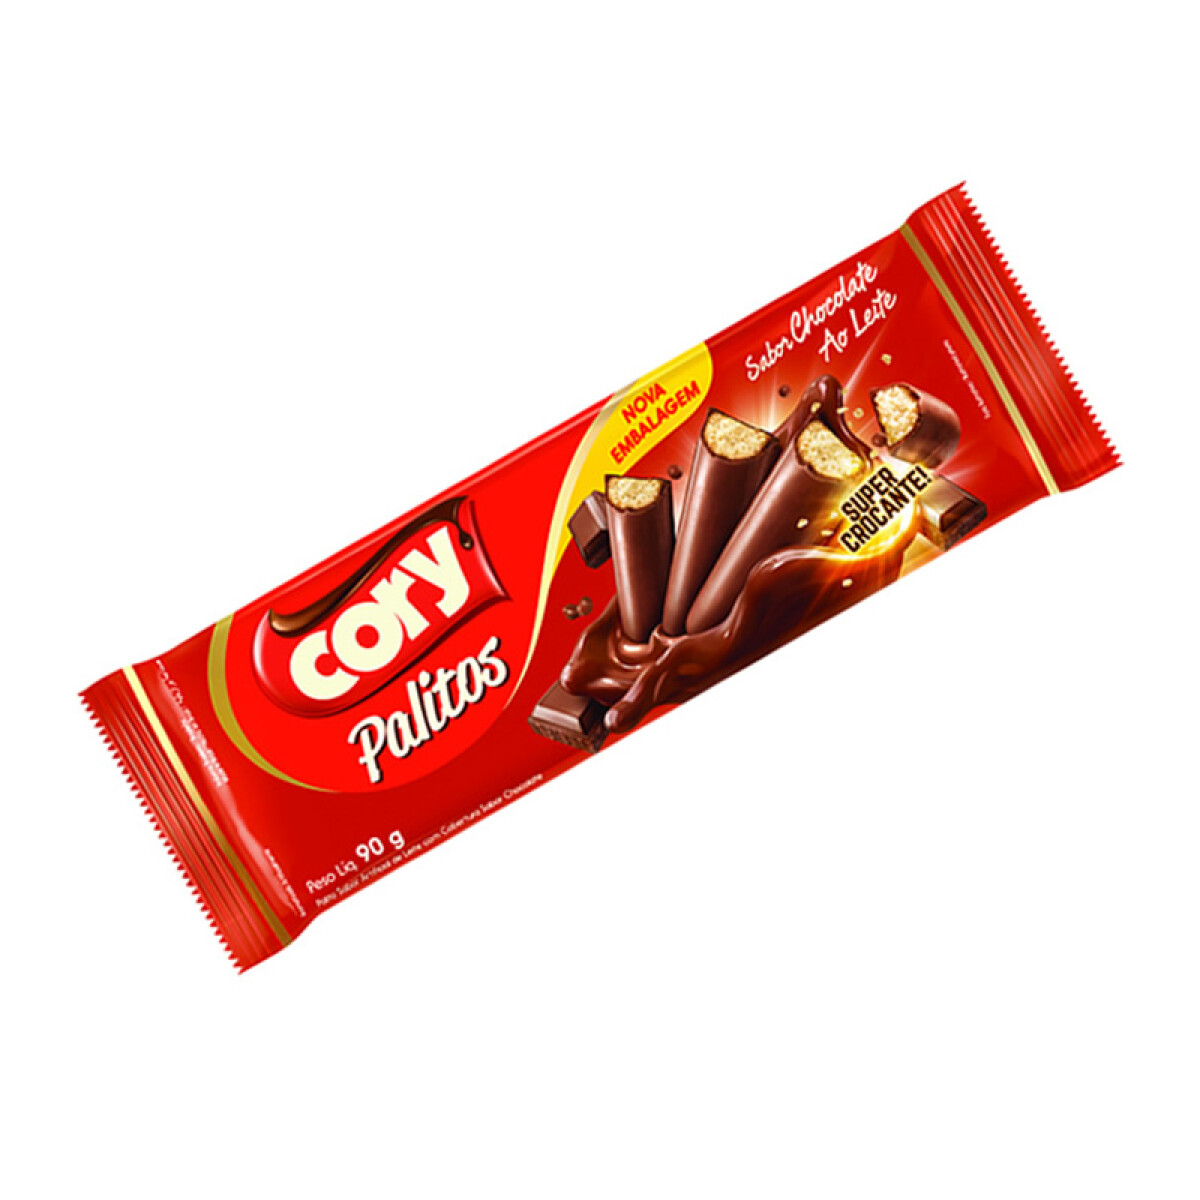 Palito Bañado CORY 90g x16 Unidades - Chocolate con Leche 